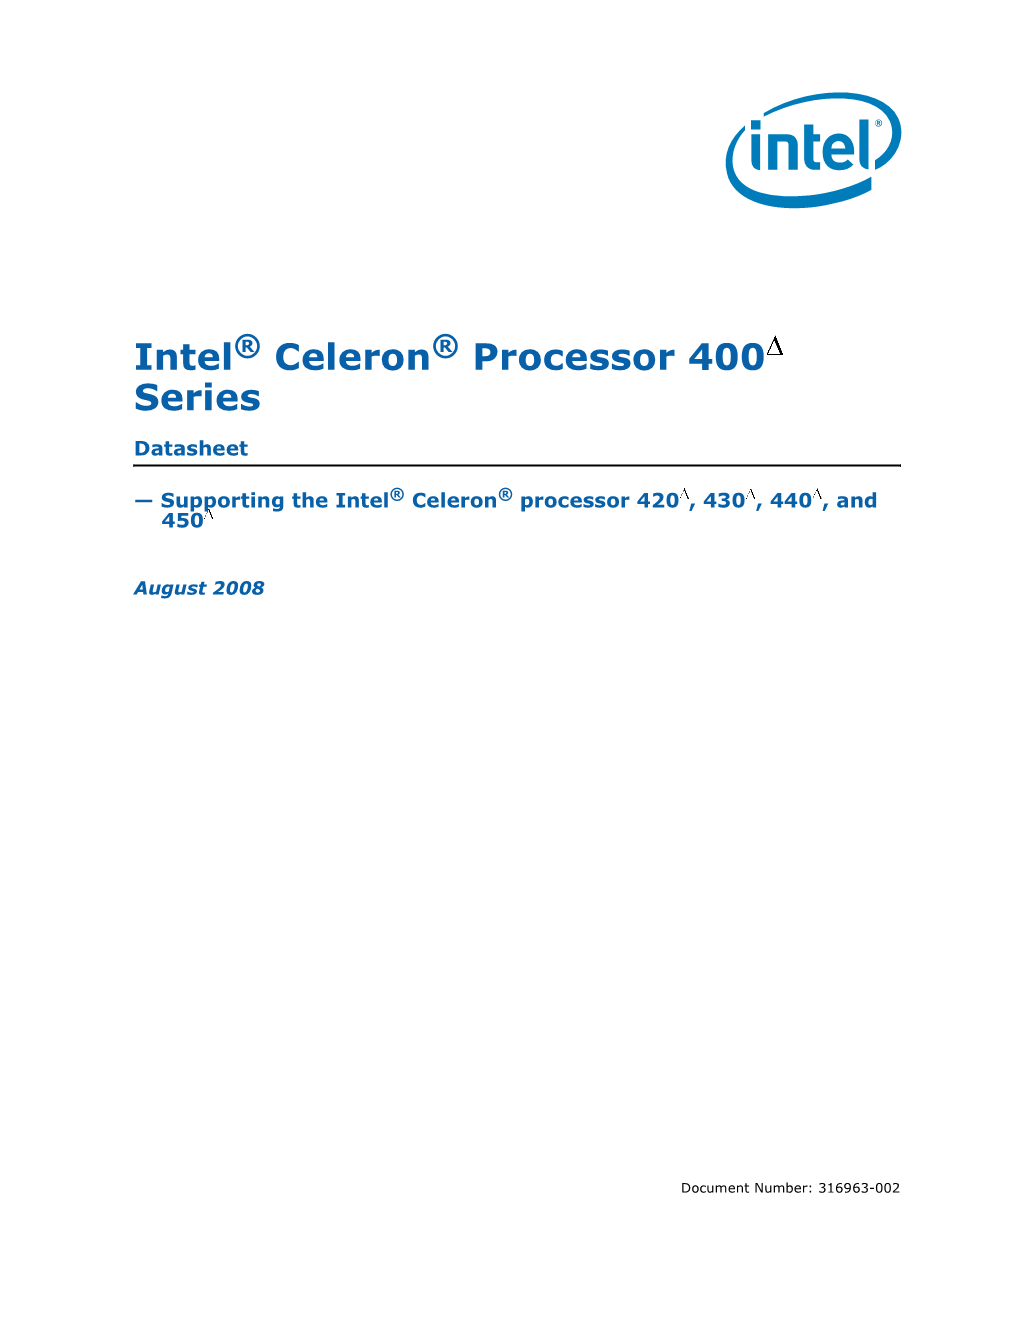 Intel® Celeron® Processor 400 Series